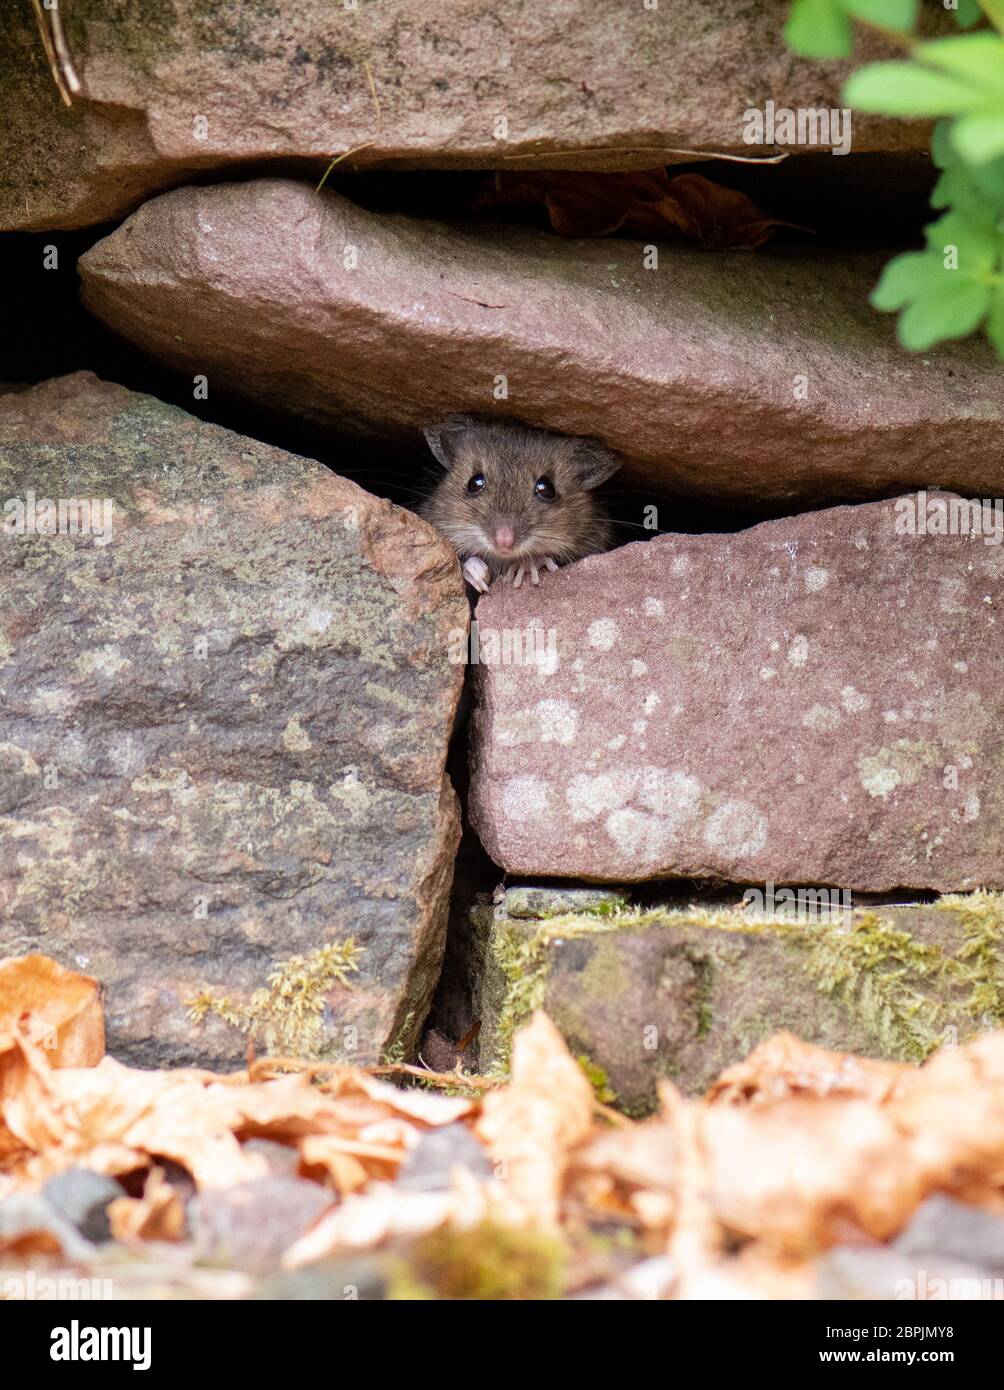 Souris en bois - Apodemus sylvaticus - peeking hors de mur de pierre sèche dans le jardin du Royaume-Uni Banque D'Images